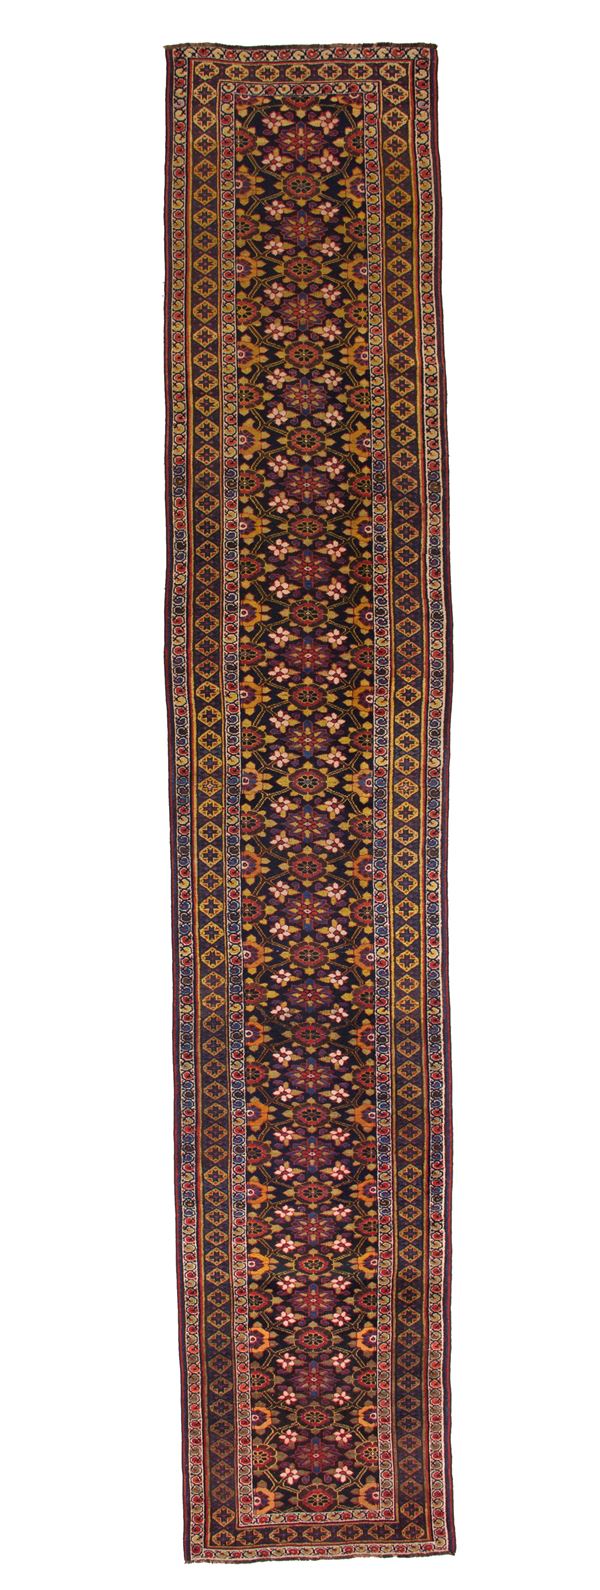 Kurdistan area carpet. Persia